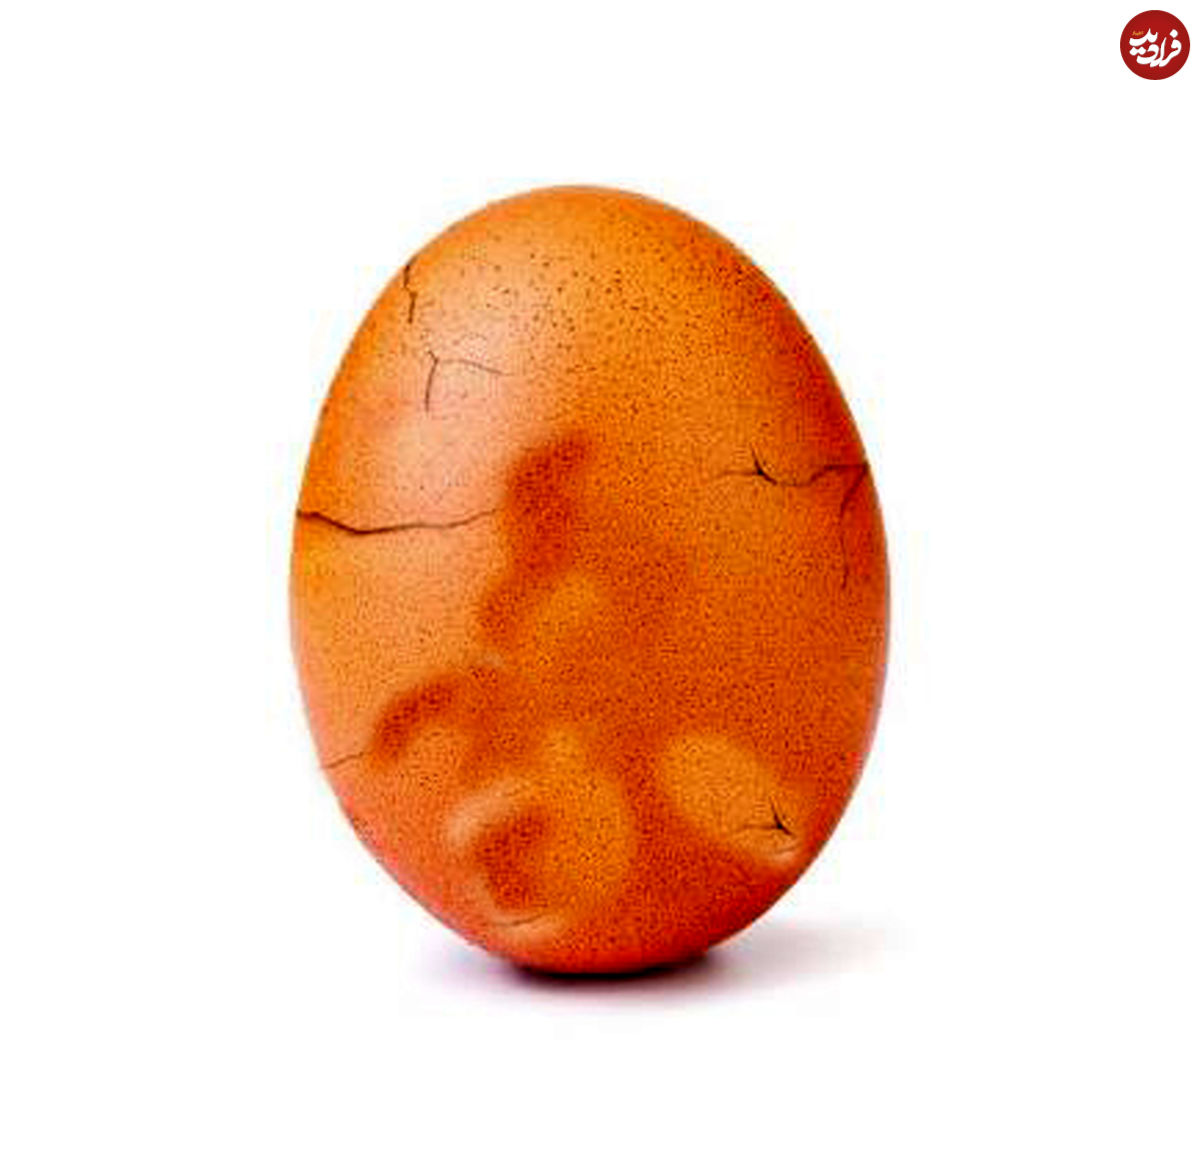 افشای راز تخم مرغ مشهور اینستاگرام